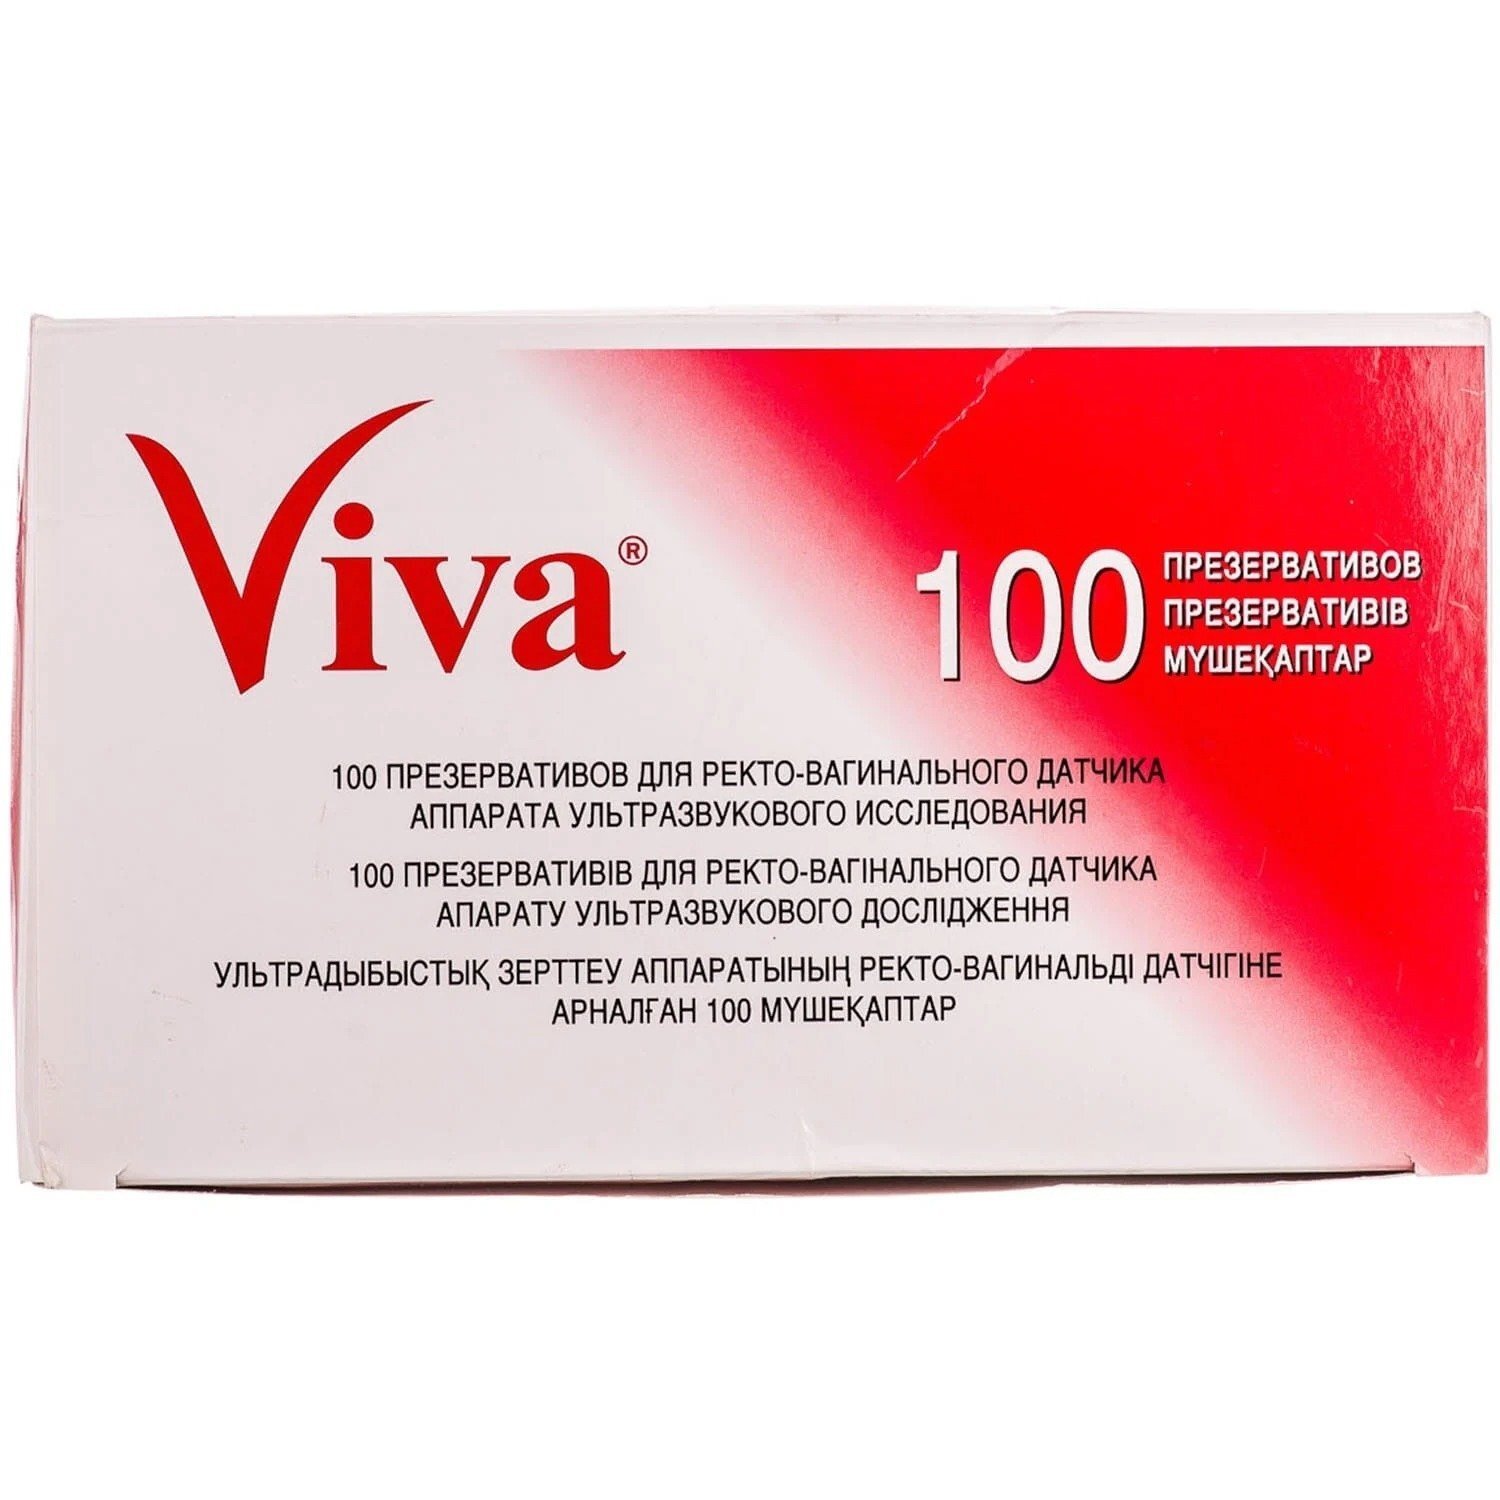 Презерватив VIVA для УЗД №100фото